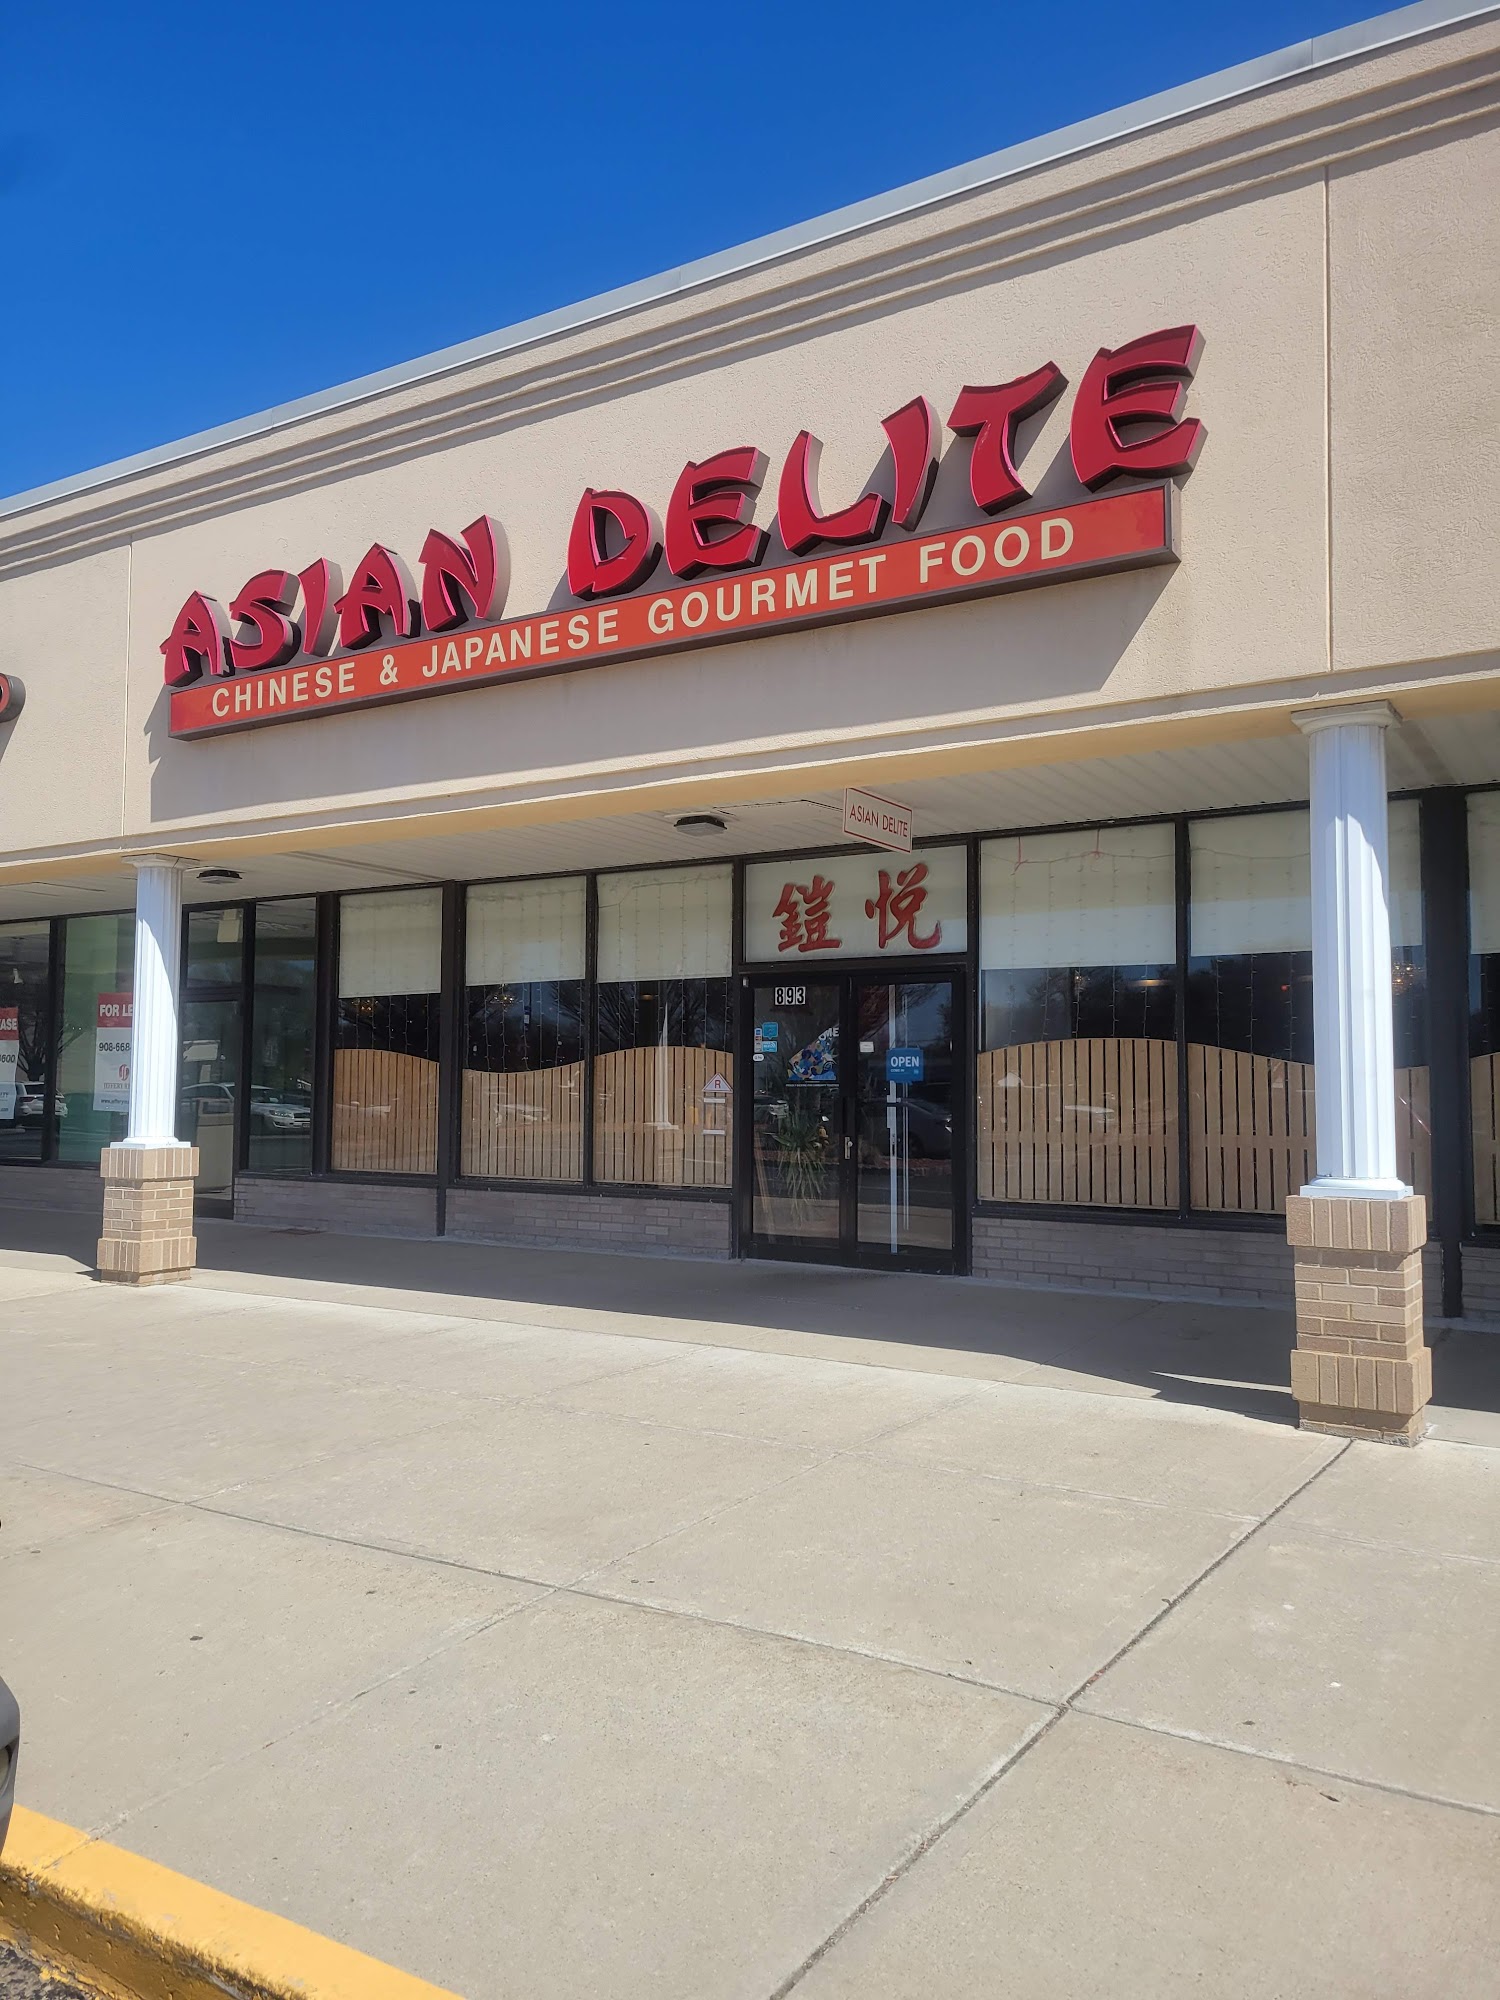 Asian Delite